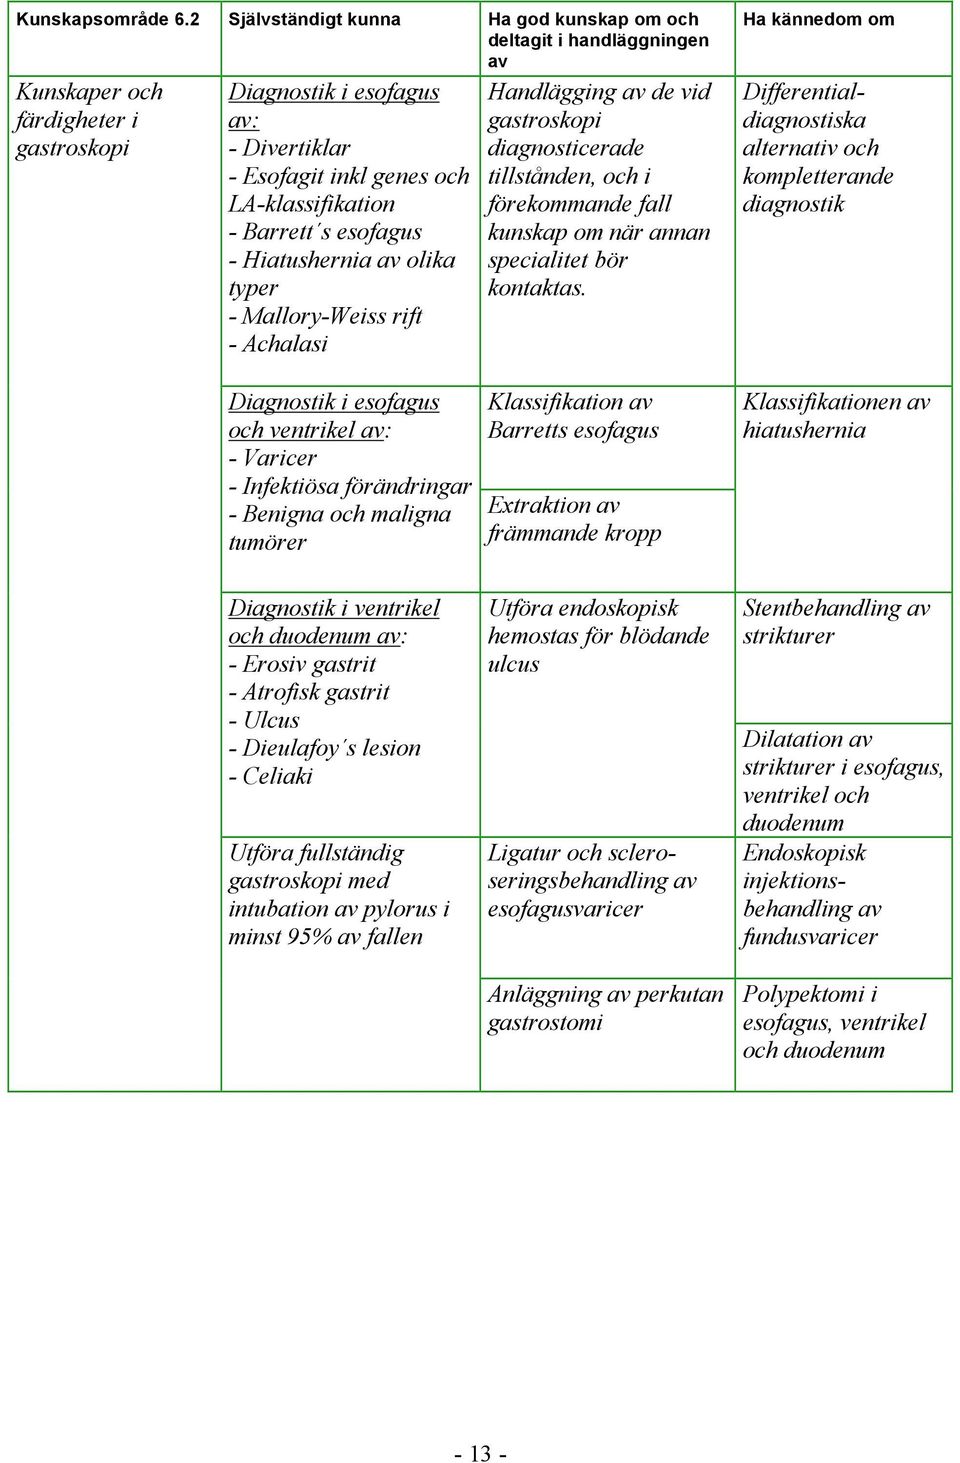 Hiatushernia olika typer - Mallory-Weiss rift - Achalasi Diagnostik i esofagus och ventrikel : - Varicer - Infektiösa förändringar - Benigna och maligna tumörer Handlägging de vid gastroskopi